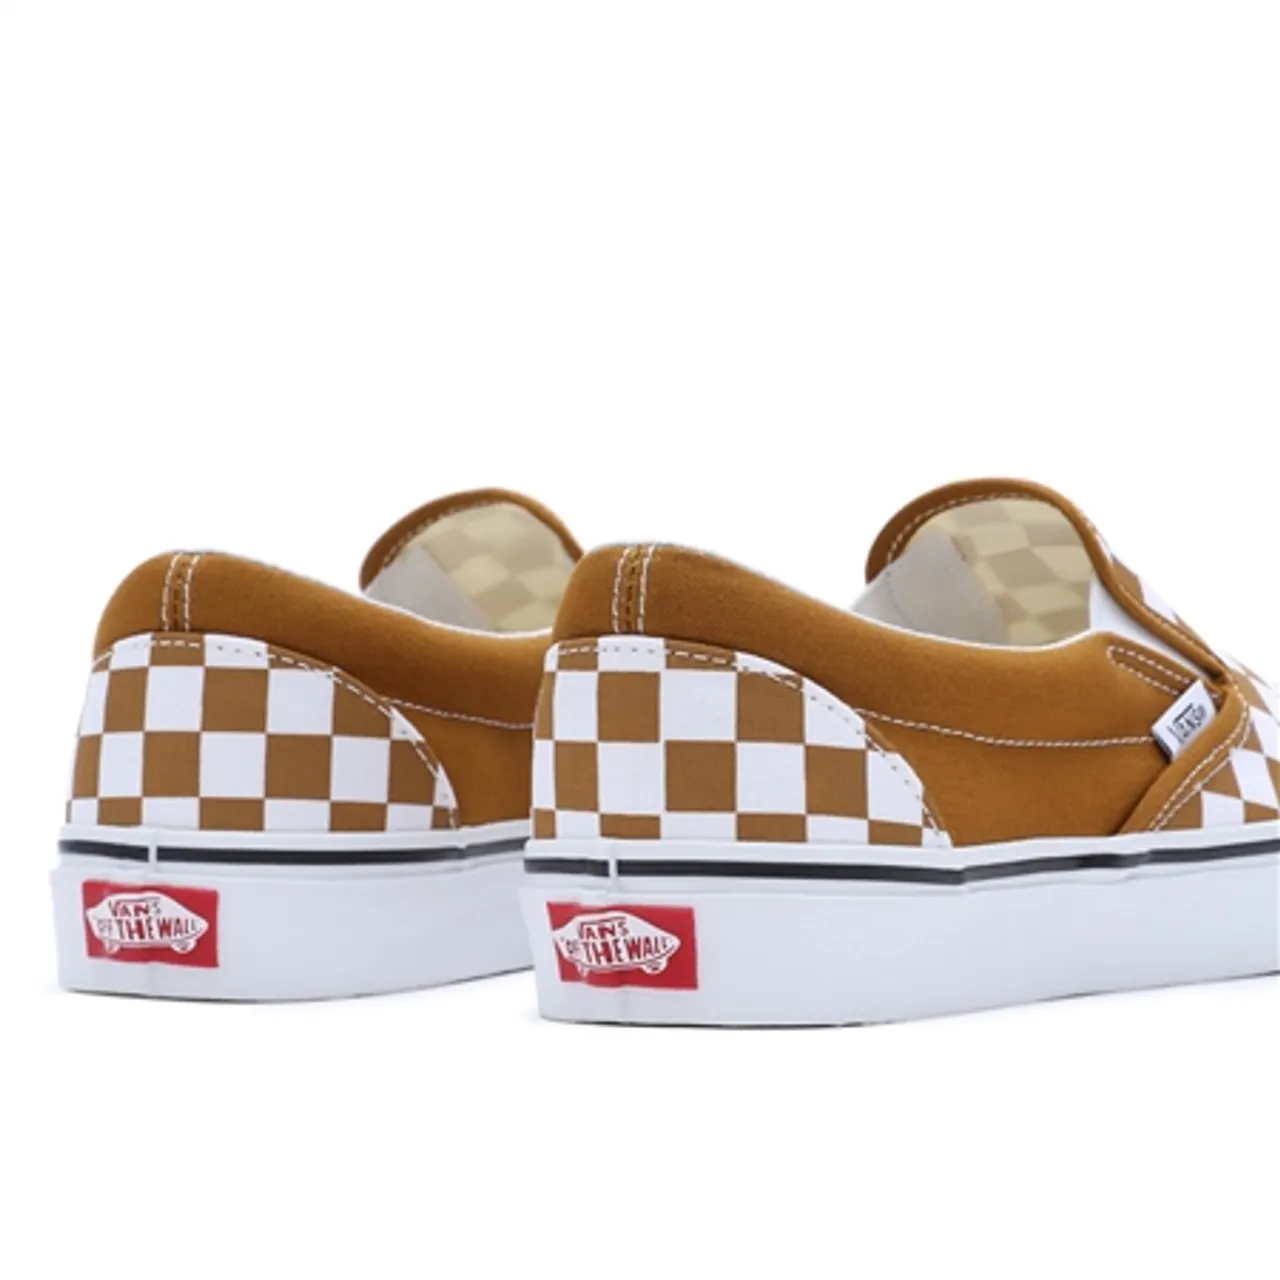 Vans Classic Slip On Shoes - Checkerboard Golden Brown - UK 8 (EU 42)